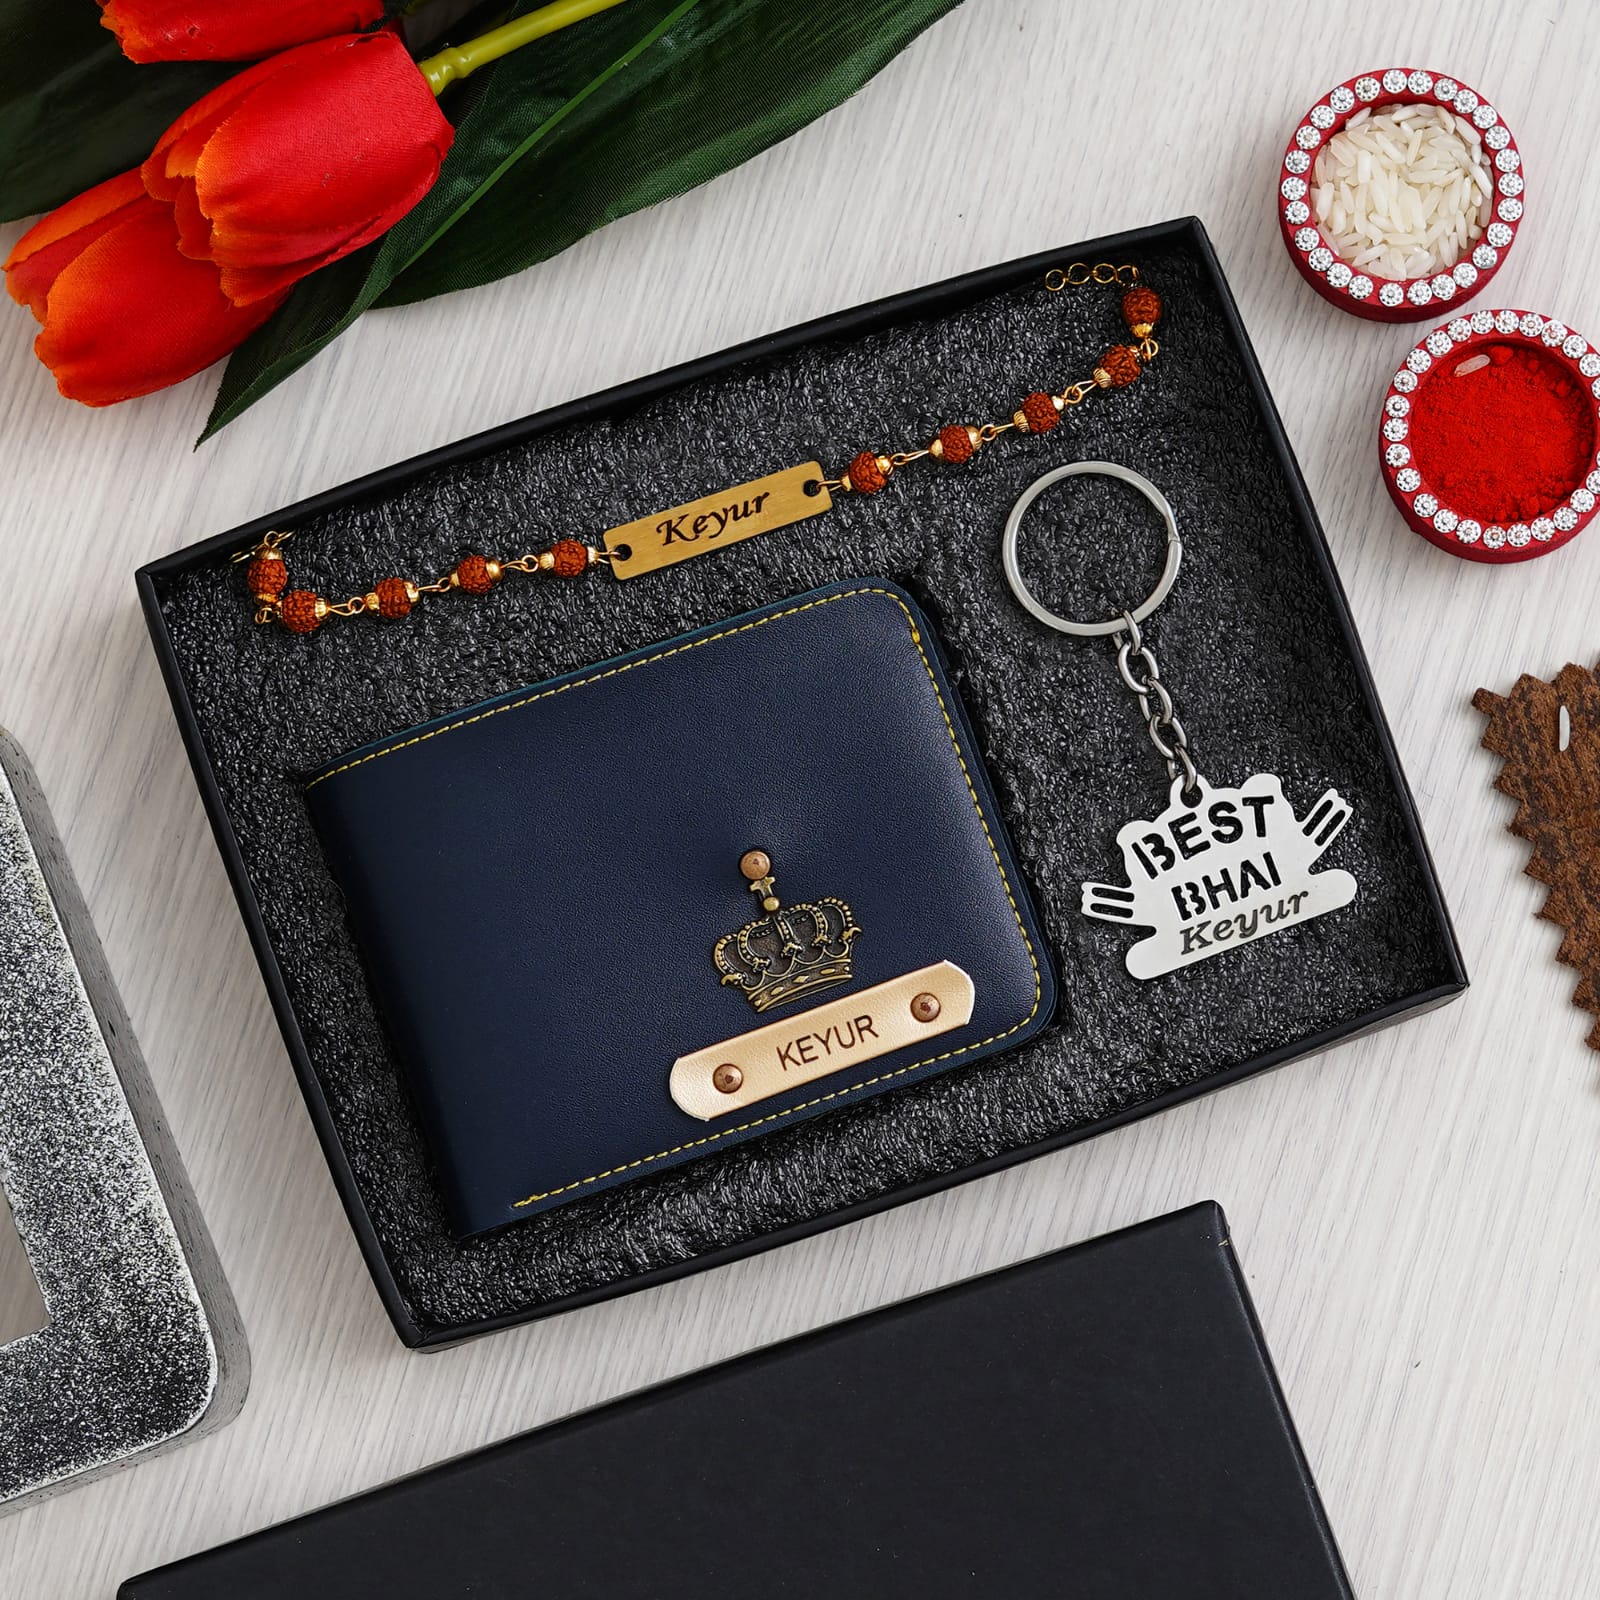 Midiron Rakhi gift for Brother| Rakhi with Chocolate Gift Set | Rakhi set  for Brother| Rakhi combo pack for Bhaiya with Rakhi, Roli, Coffee Mug, 90gm  Chocolates & Greeting Card Gift Set